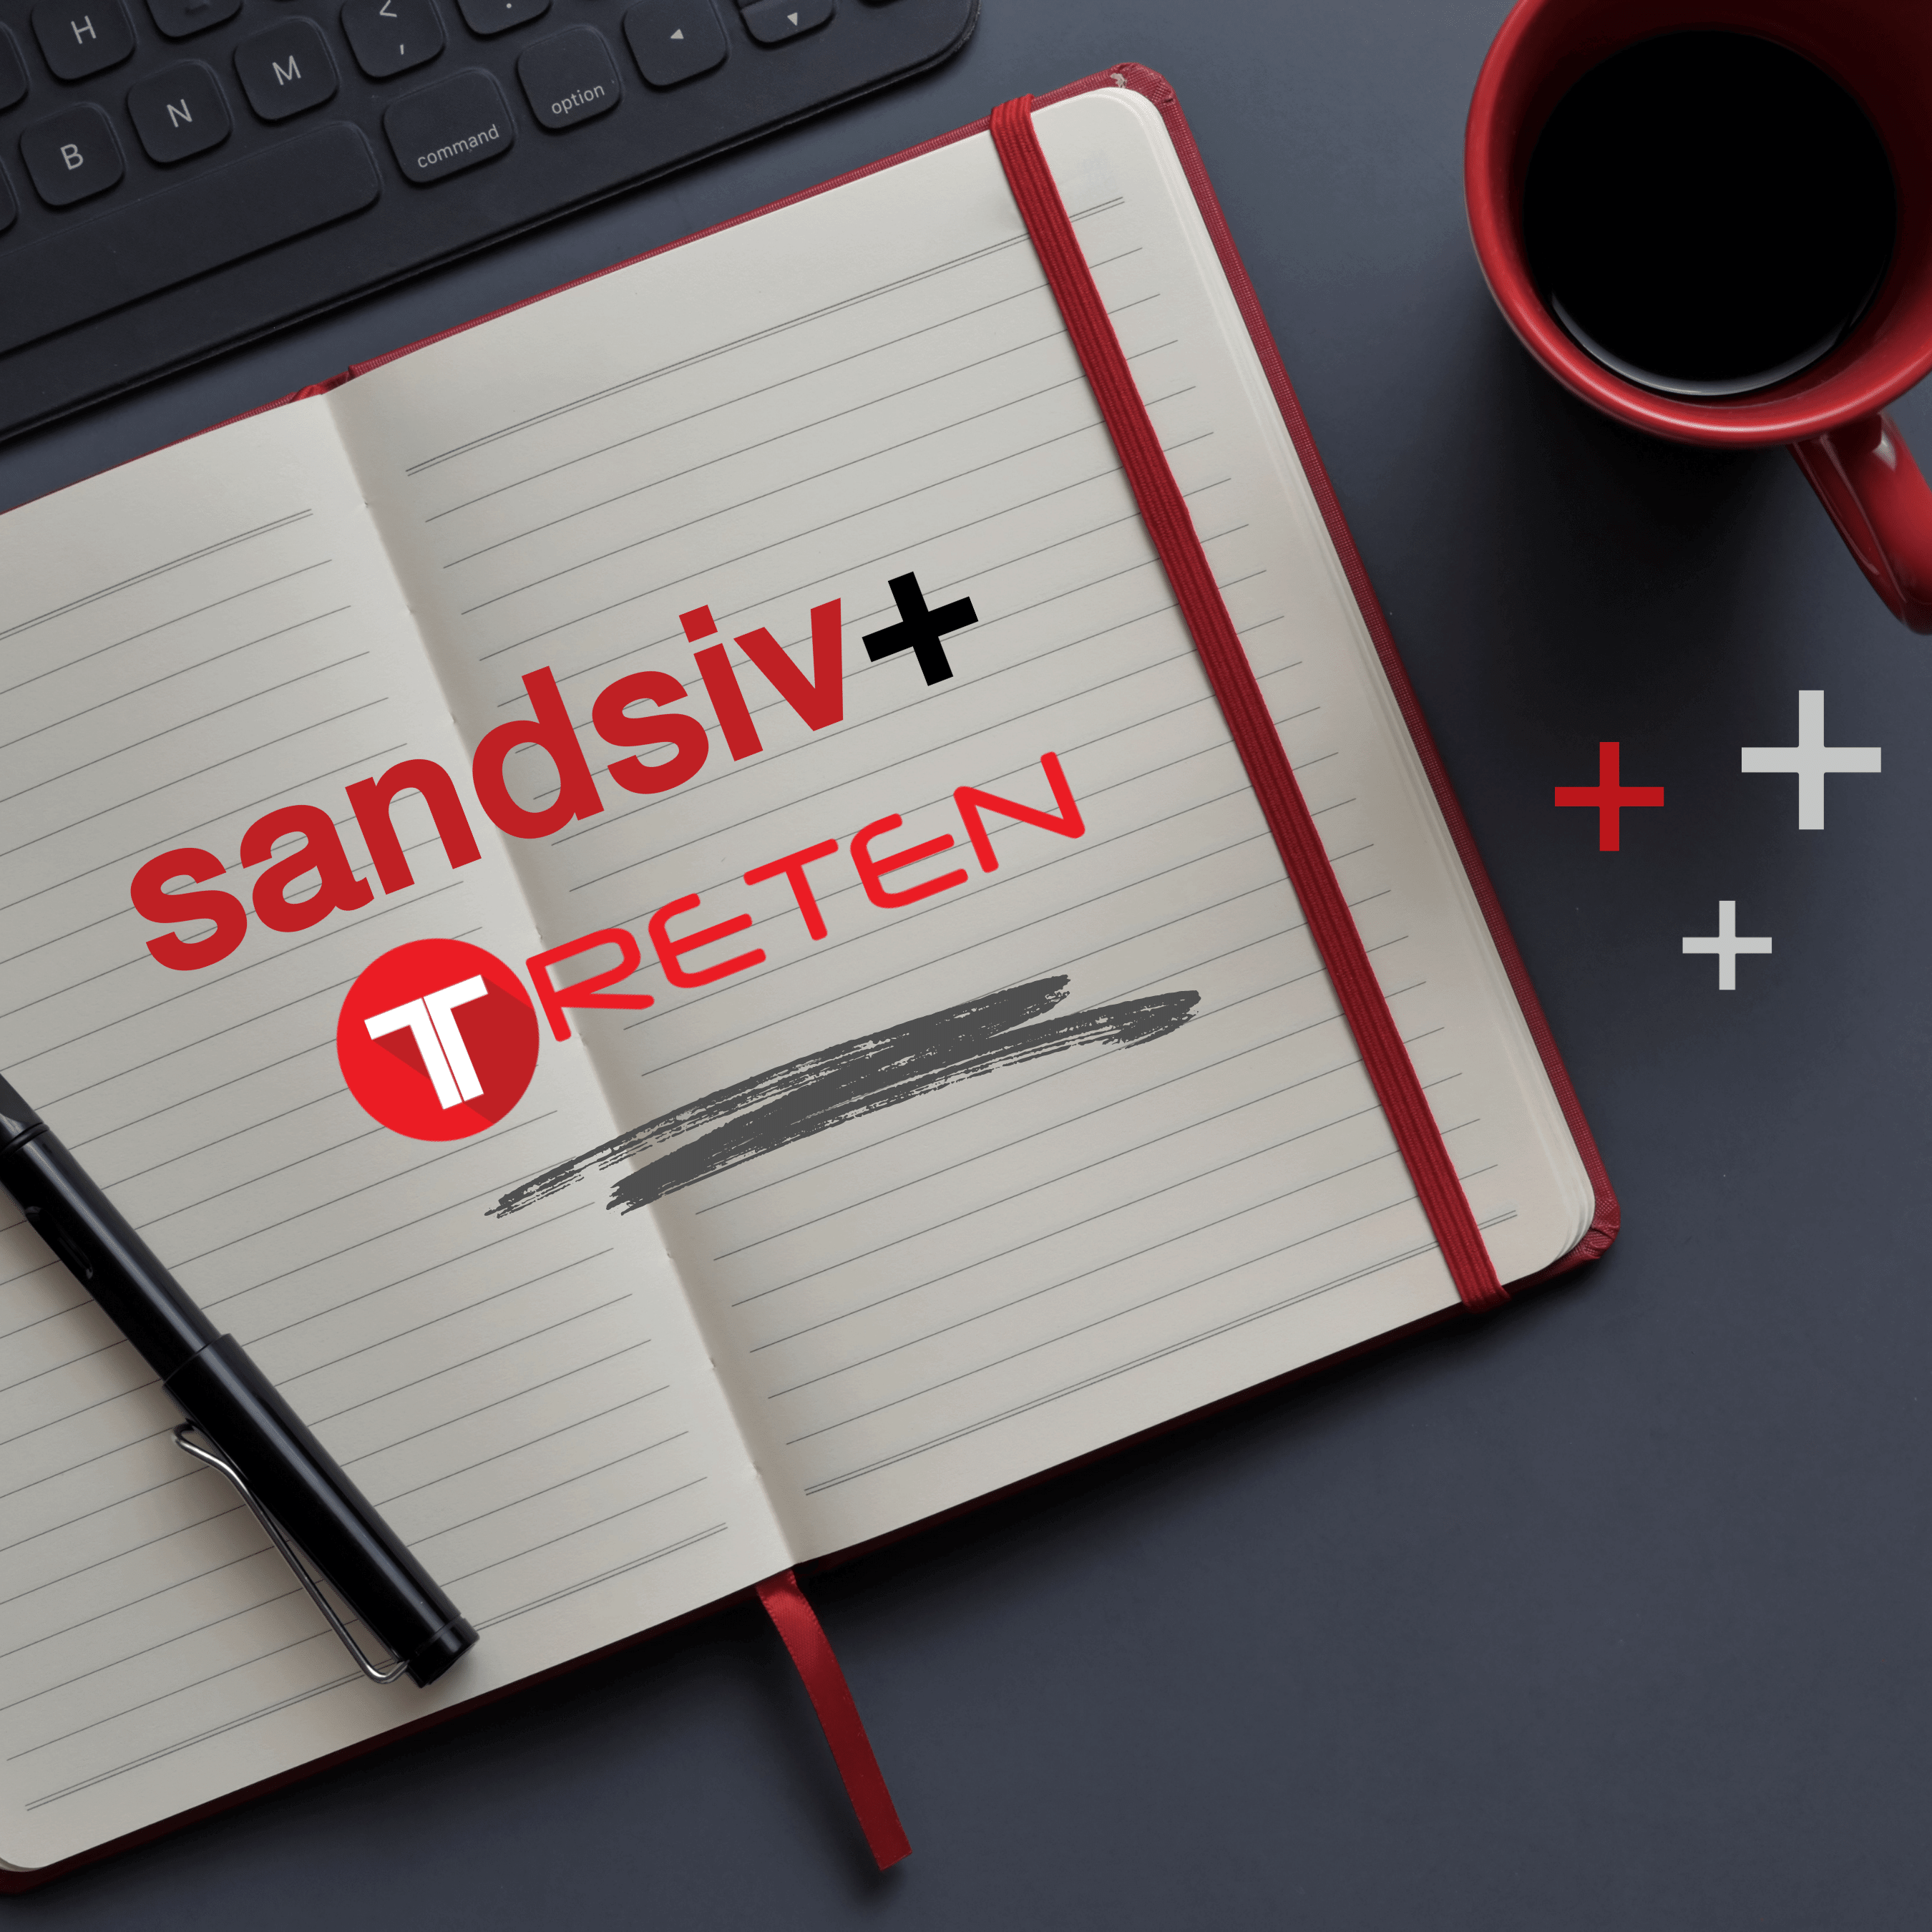 New Strategic Partner SANDSIV Treten